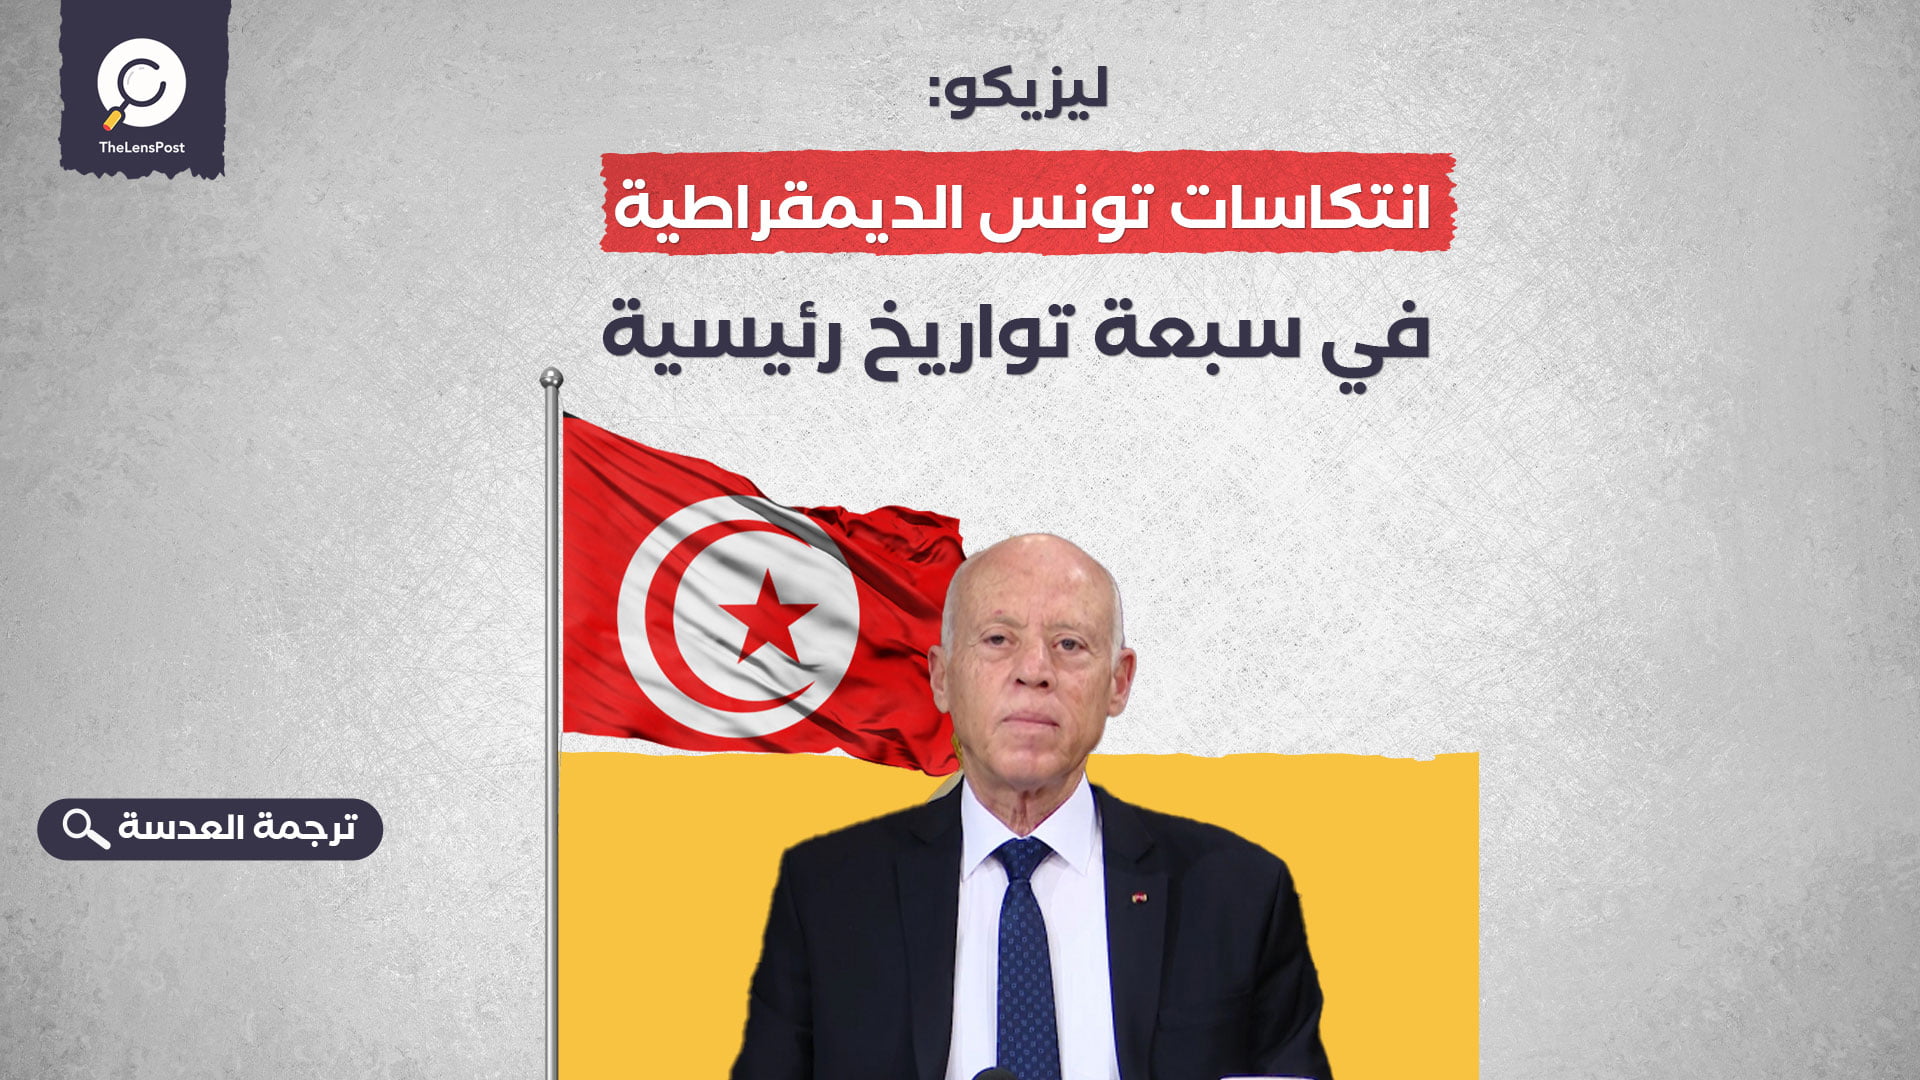 ليزيكو: انتكاسات تونس الديمقراطية في سبعة تواريخ رئيسية